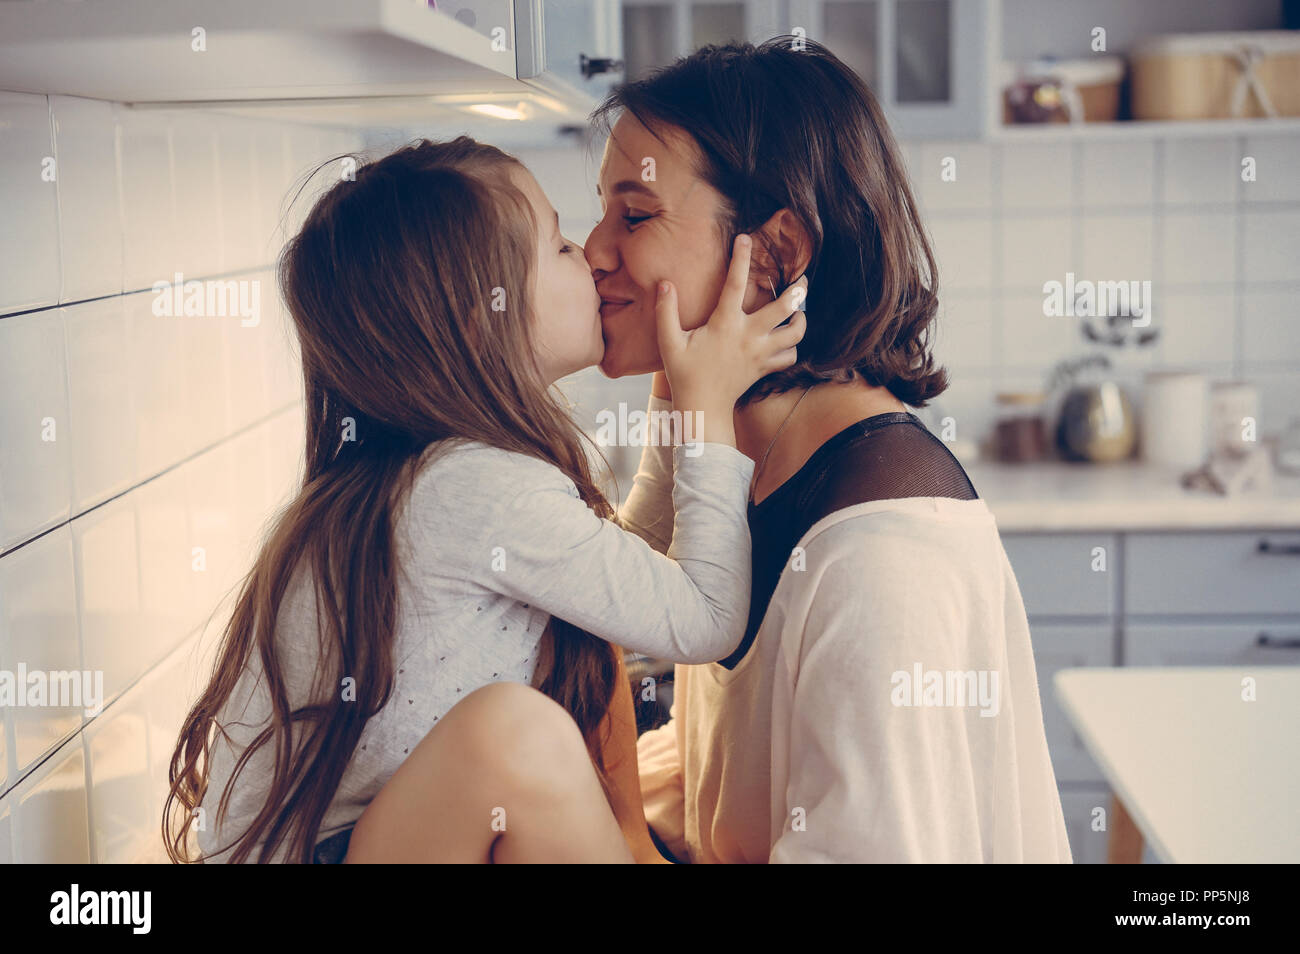 Лесбиянки мама дочка подруга. Мама с дочкой поцелуй. Мама целует дочь. Молодые лесбияночки на кухне. Мать и дочь поцелуй с языком.